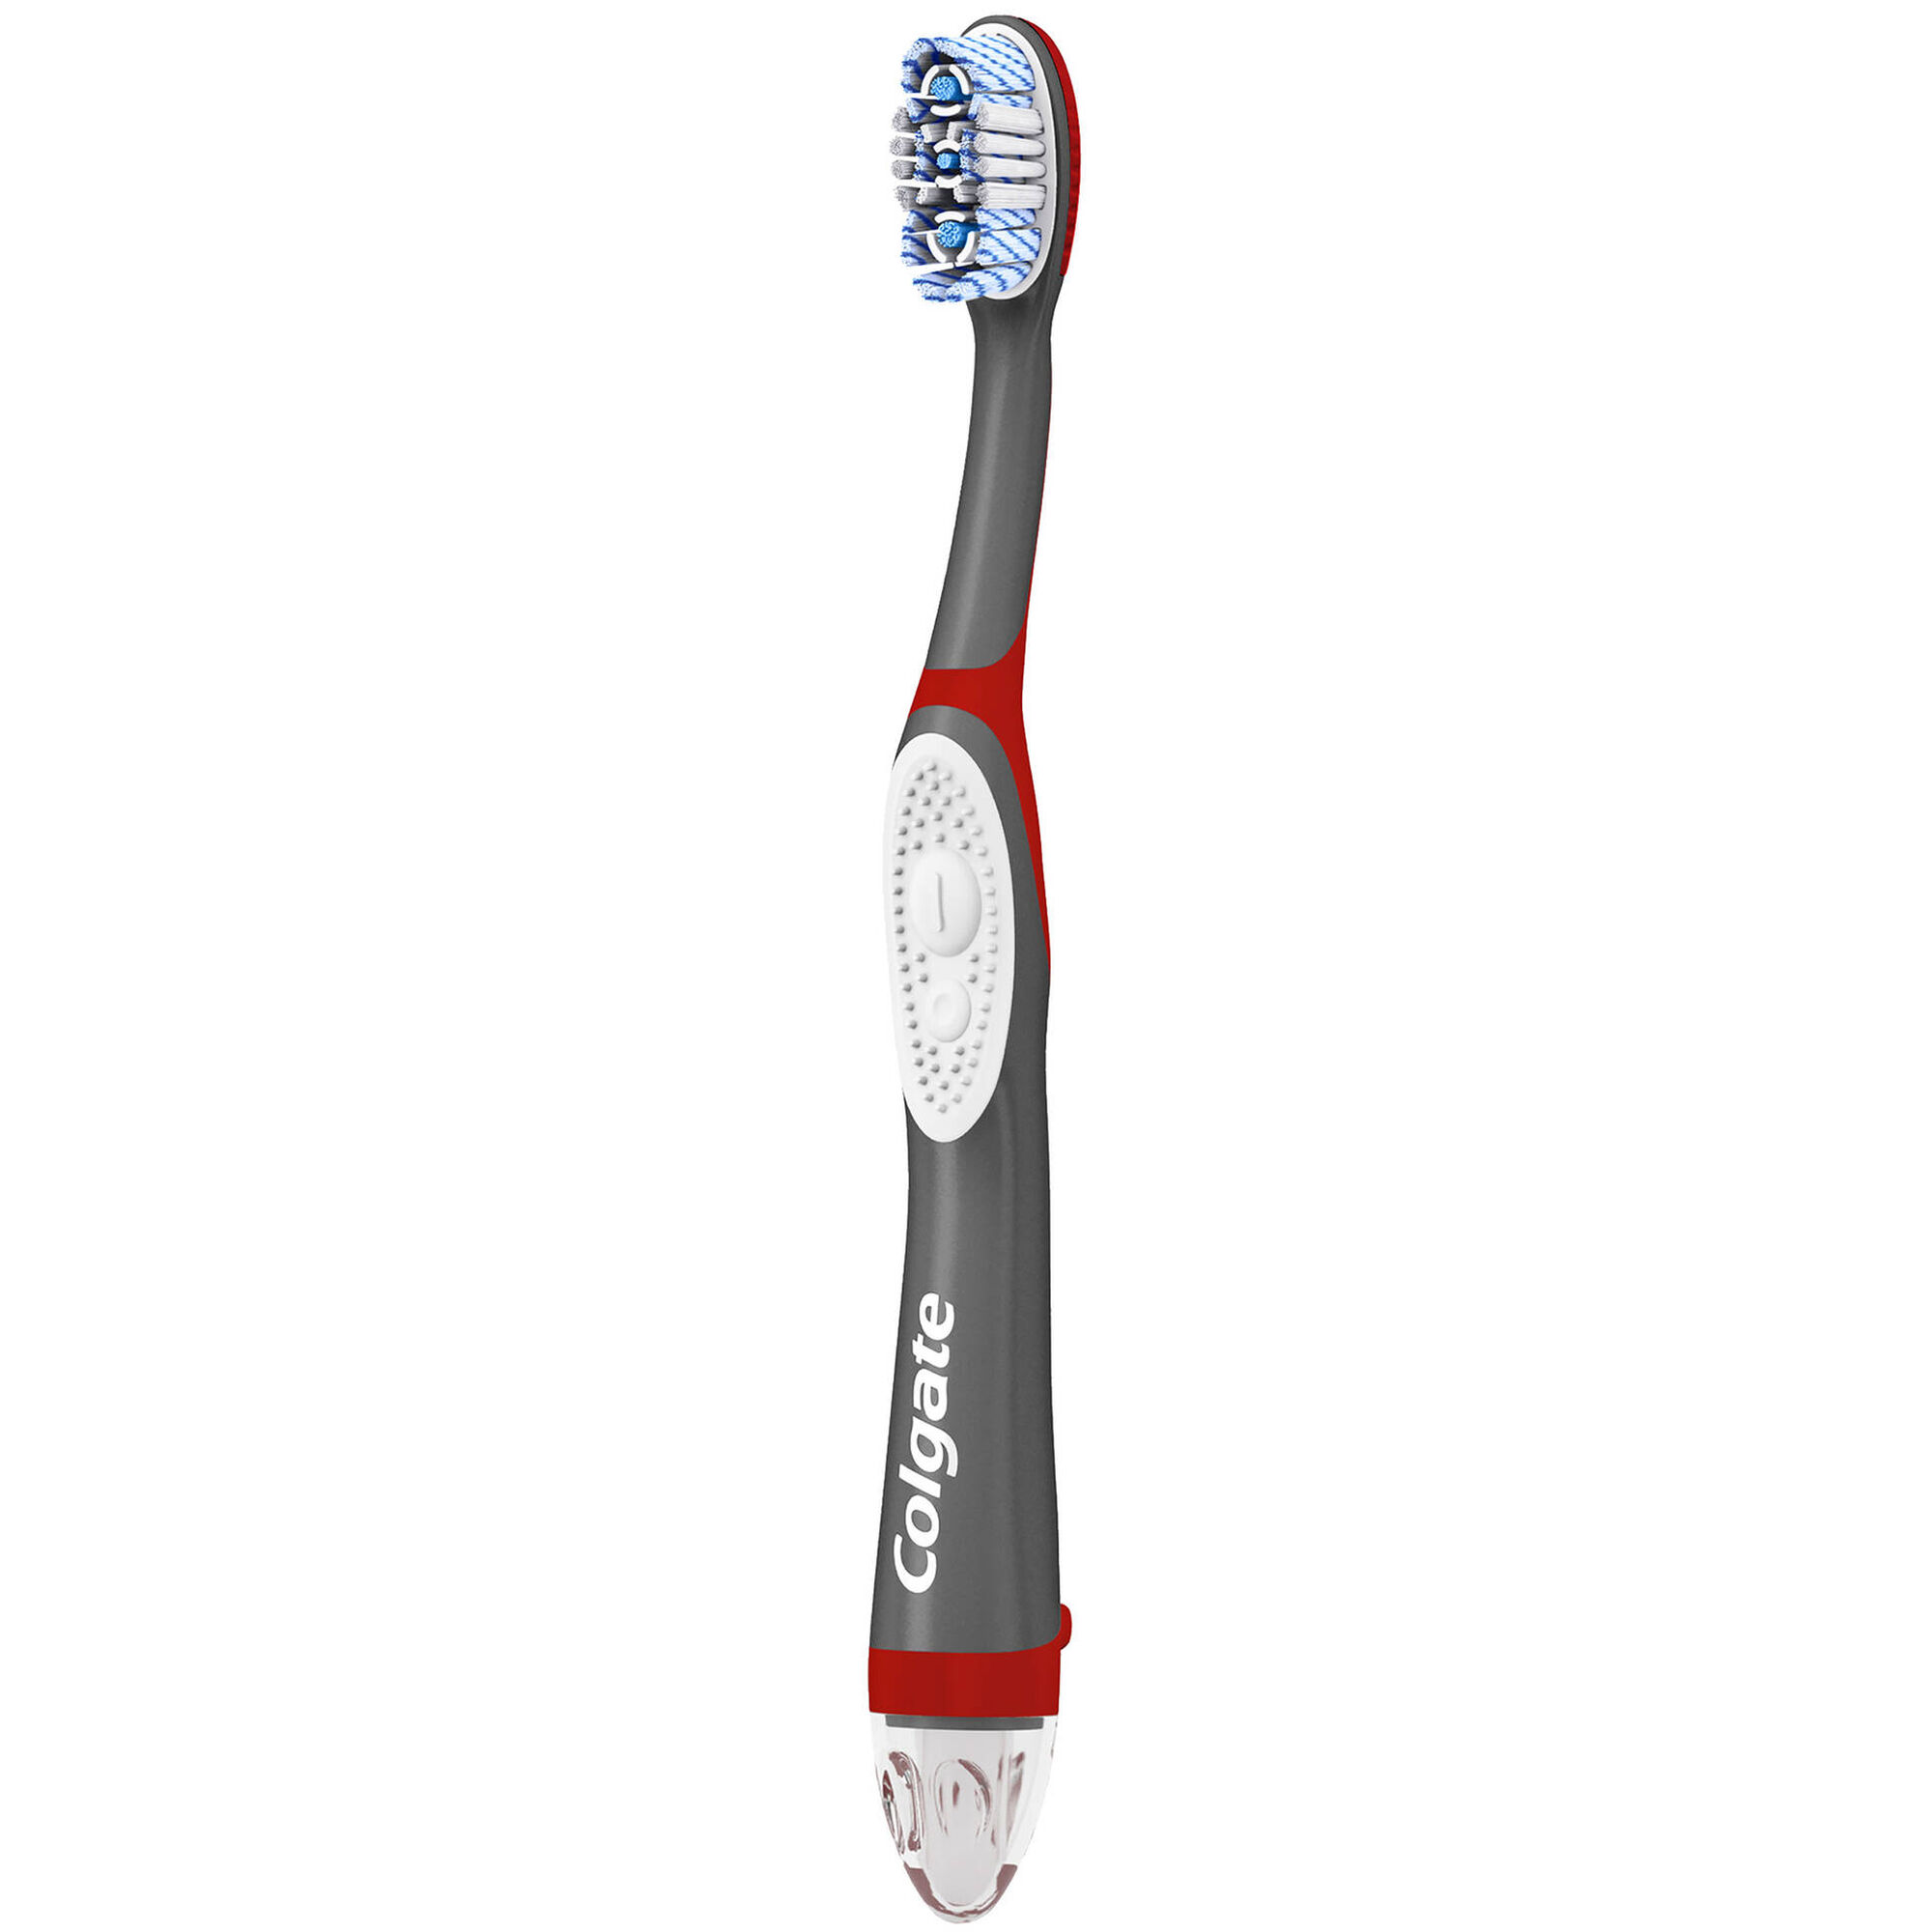 Escova de Dentes Pilhas 360 Floss Tip Média - emb. 1 un - Colgate